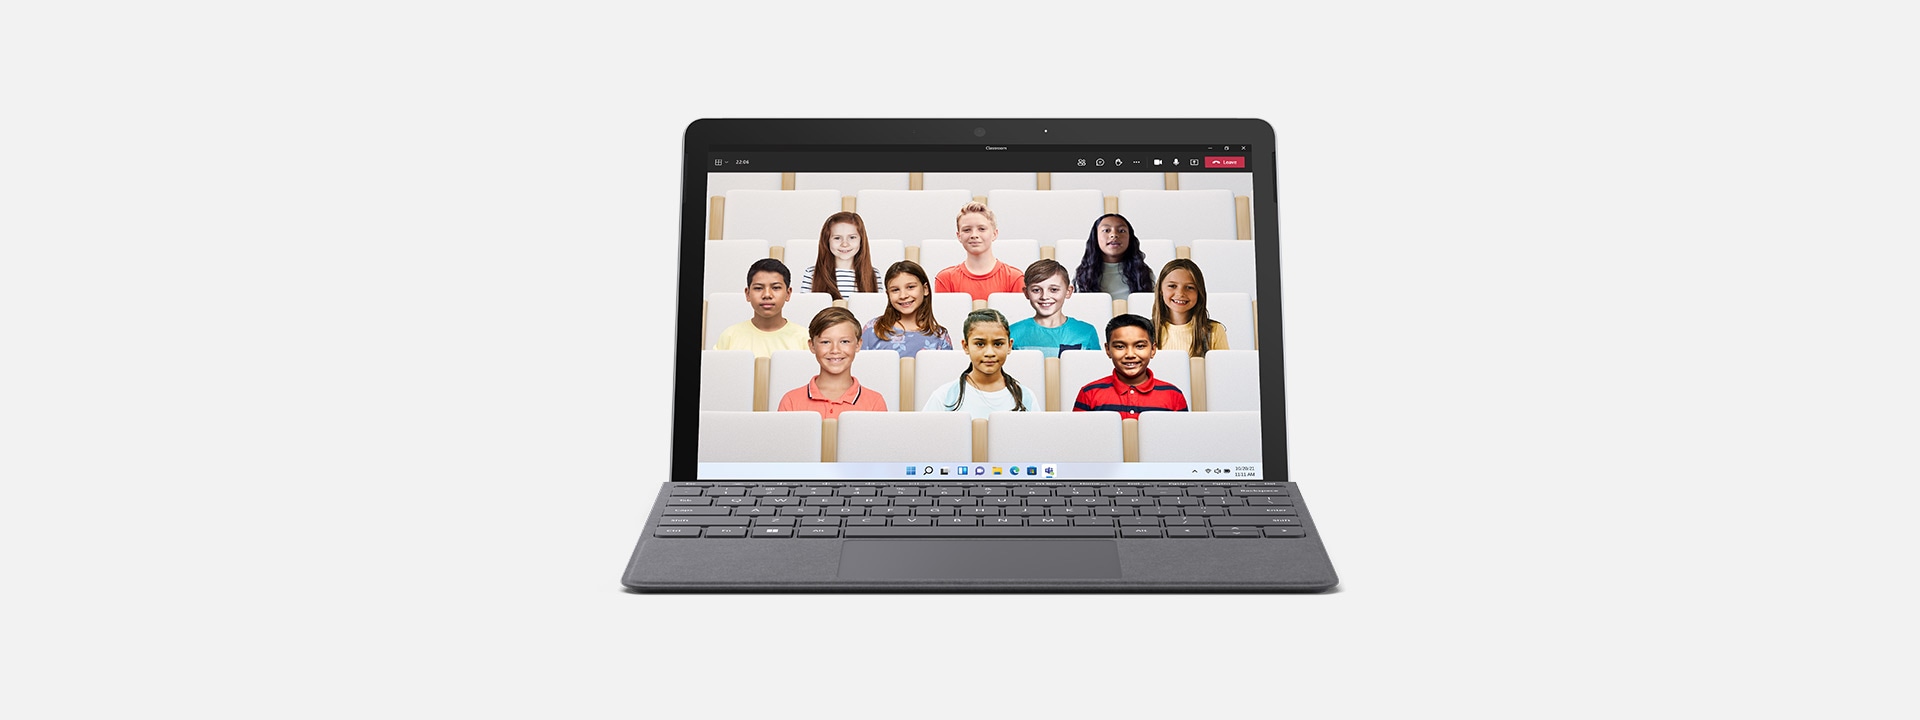 當做手提電腦的 Surface Go 3 顯示教室 Teams 環境。